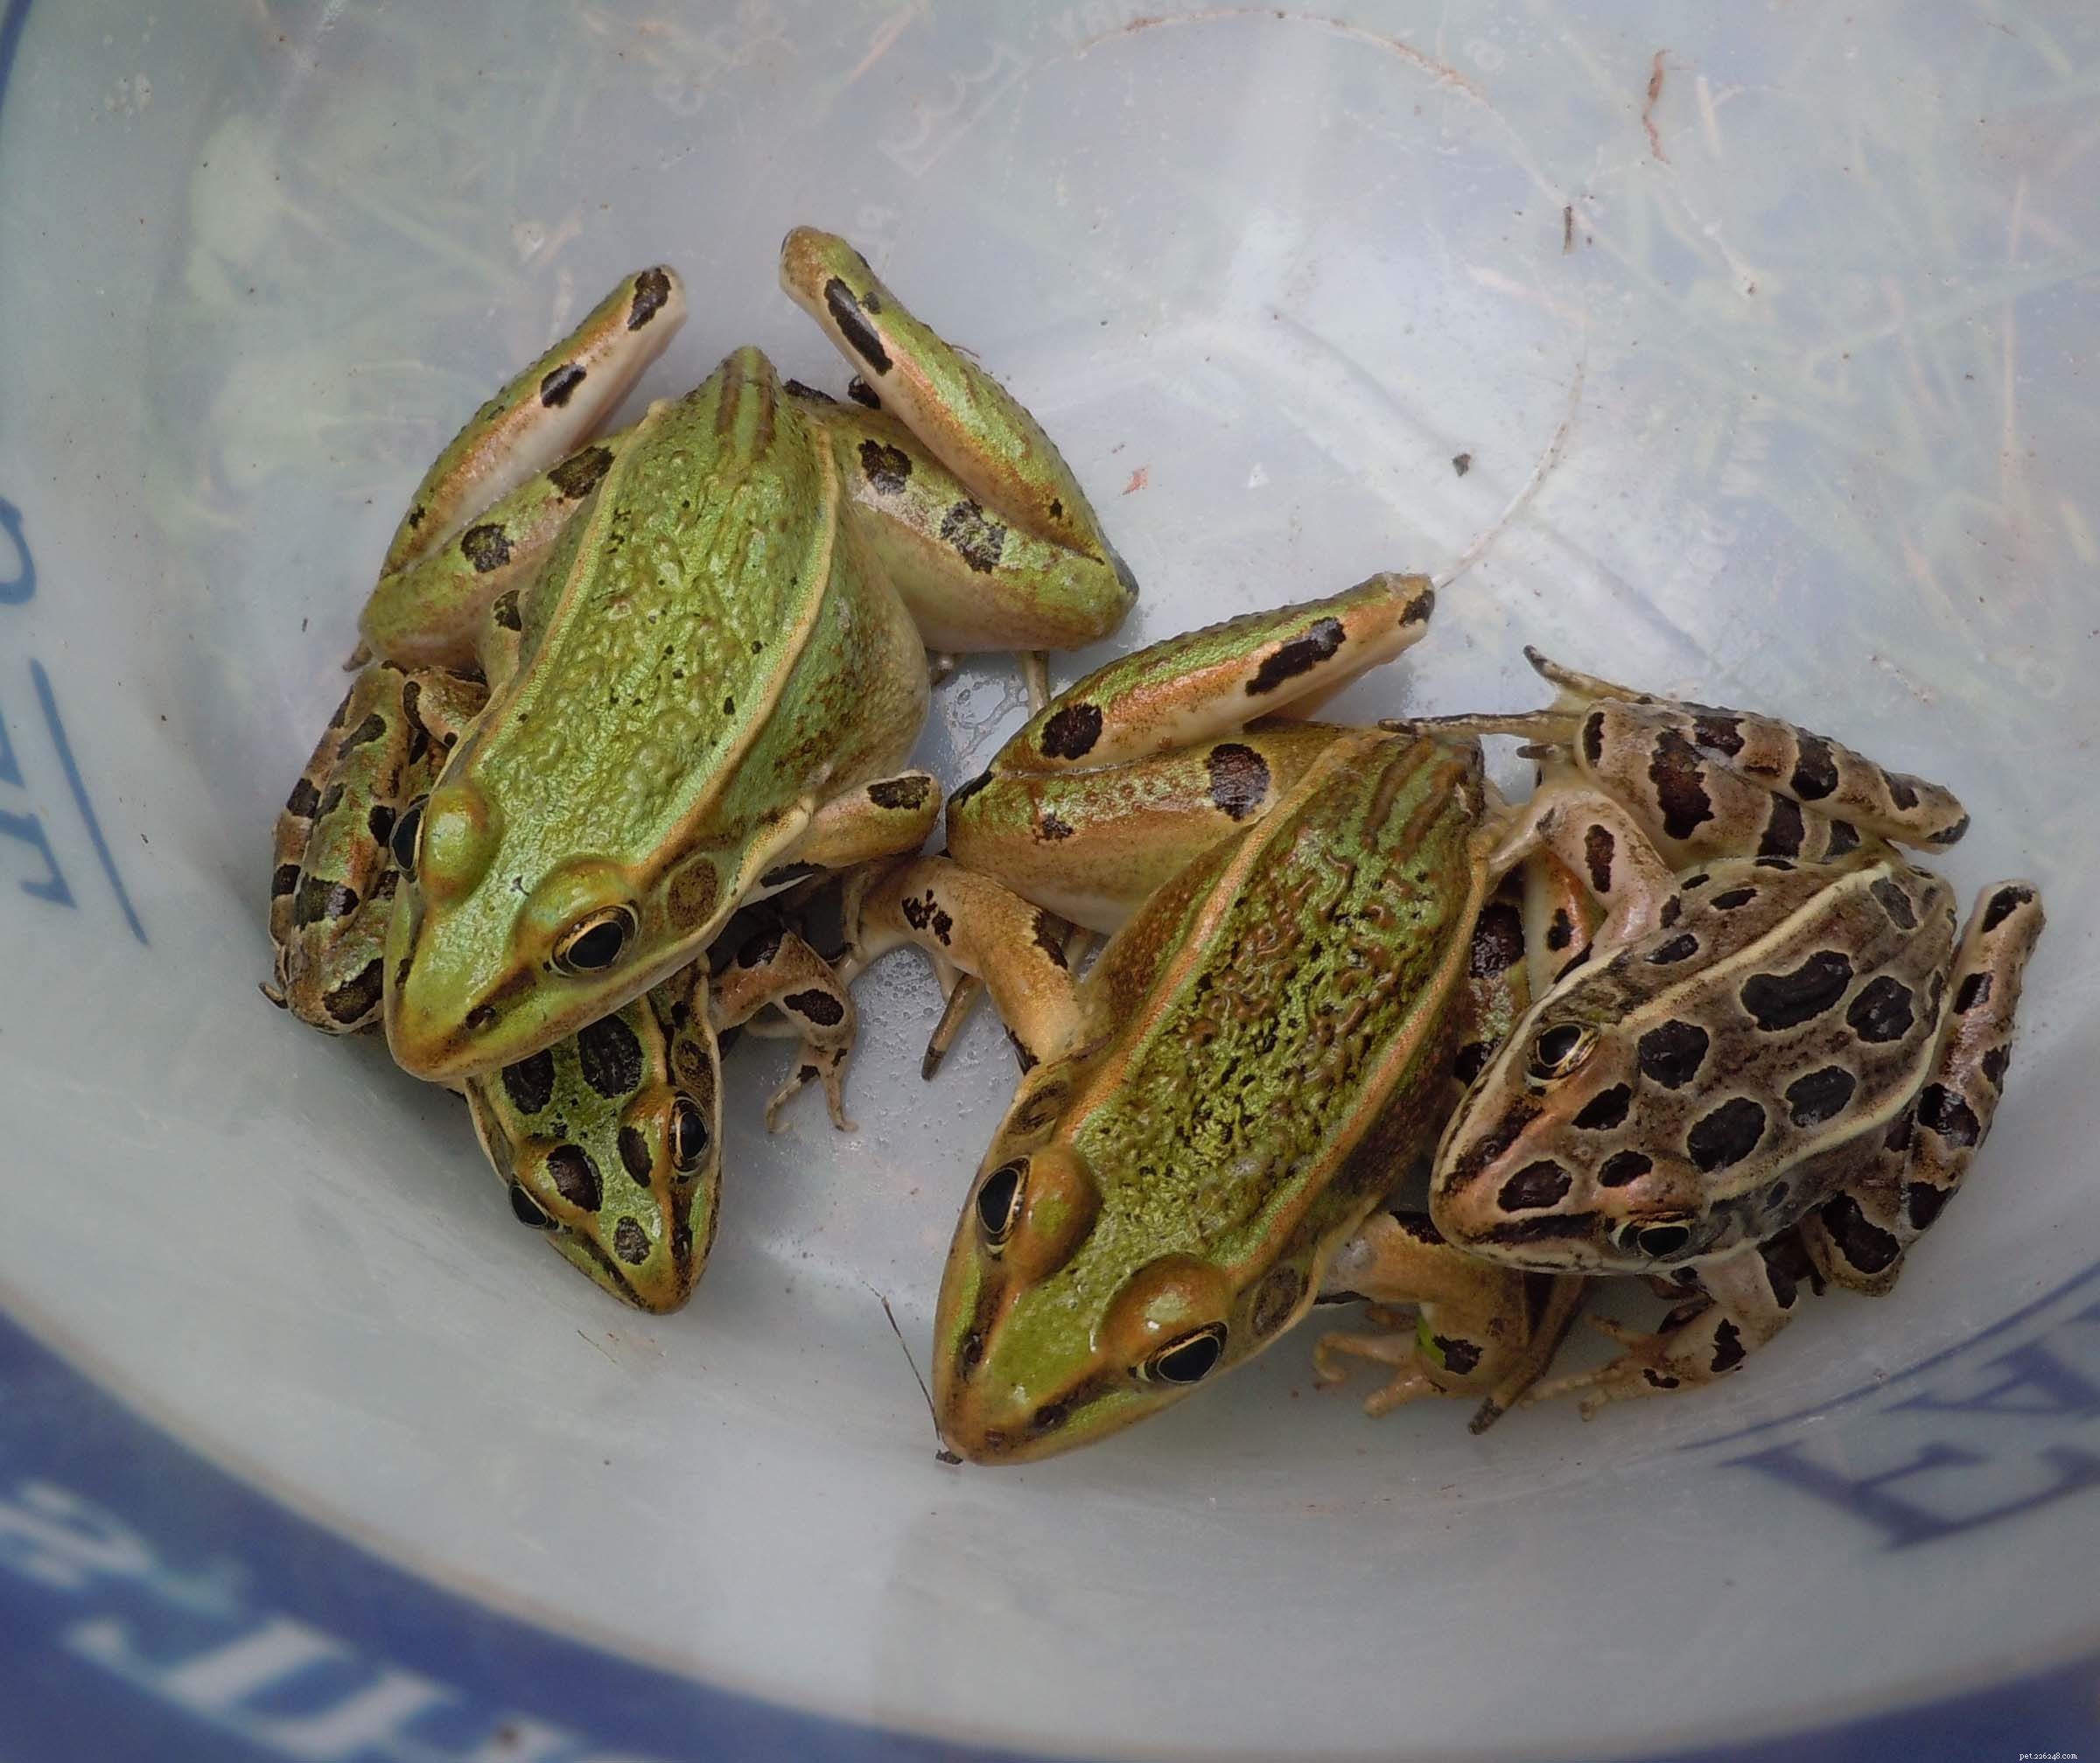 ヒョウのカエルショッカー–ニューヨーク市で新種が発見されました 